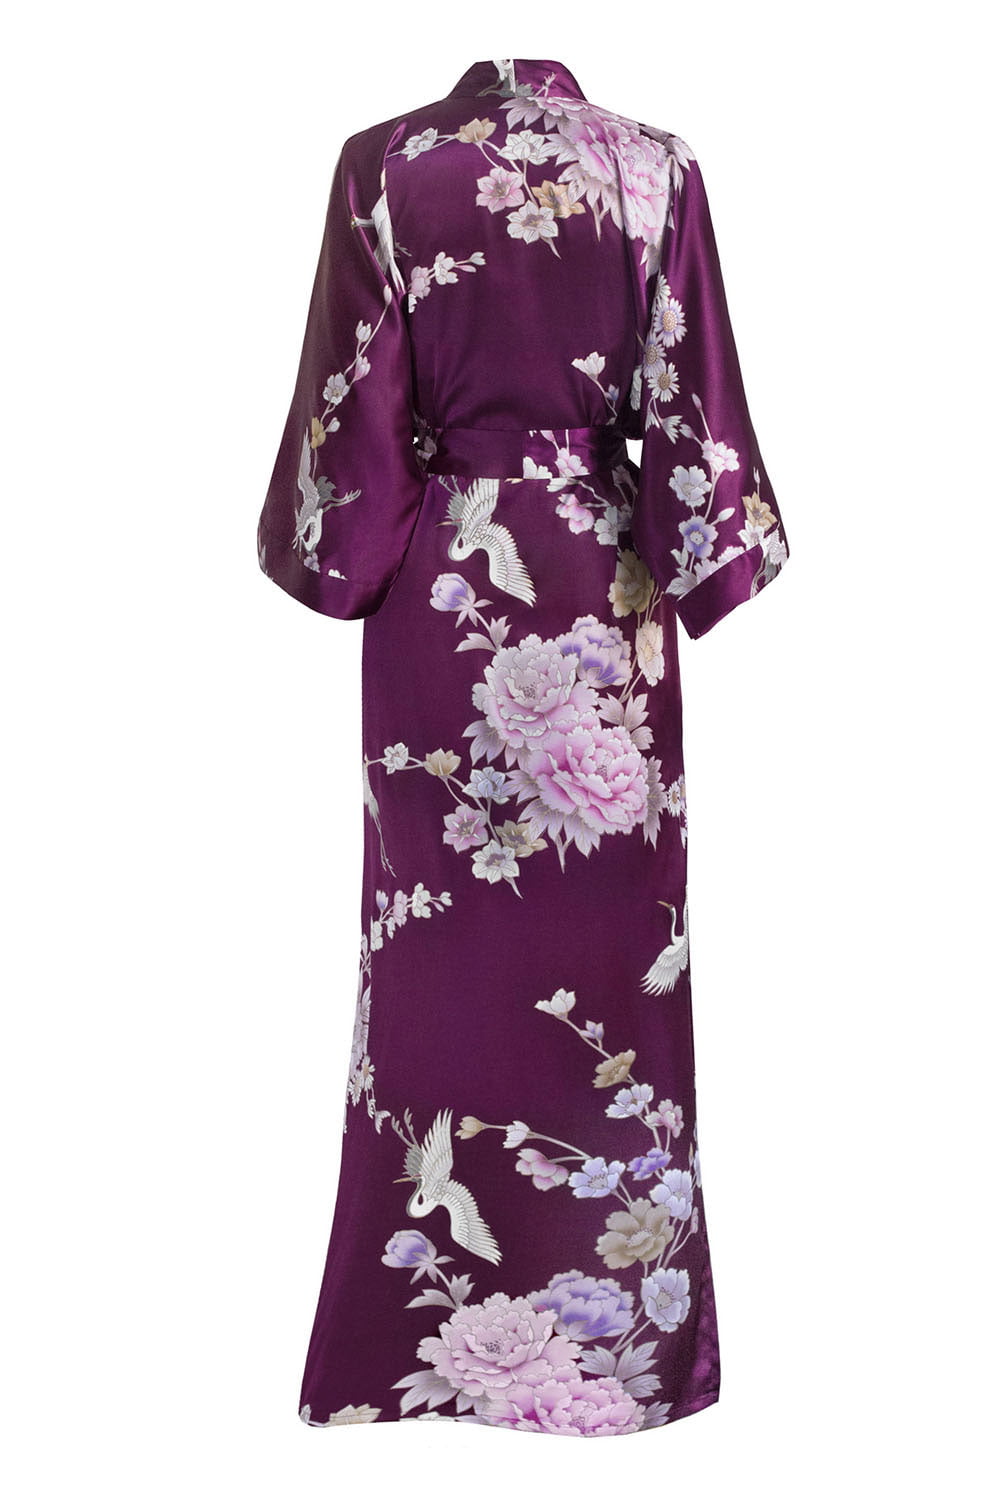 Floral KIM+ONO Women's Satin Kimono Robe Long 